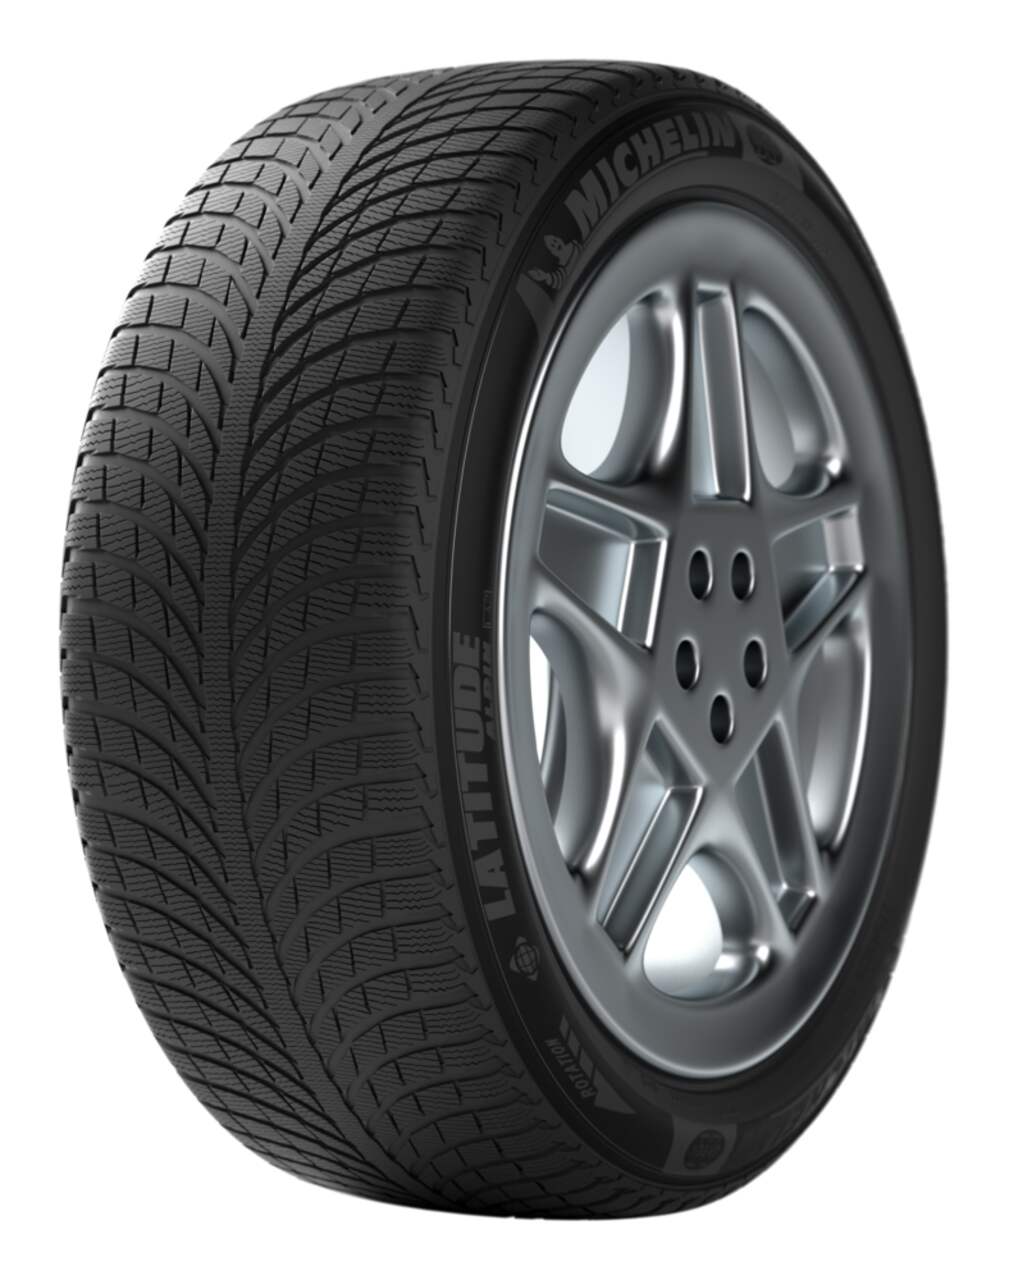 Michelin Latitude Alpin LA2 Tire & Canadian Winter | For Tire CUV Passenger